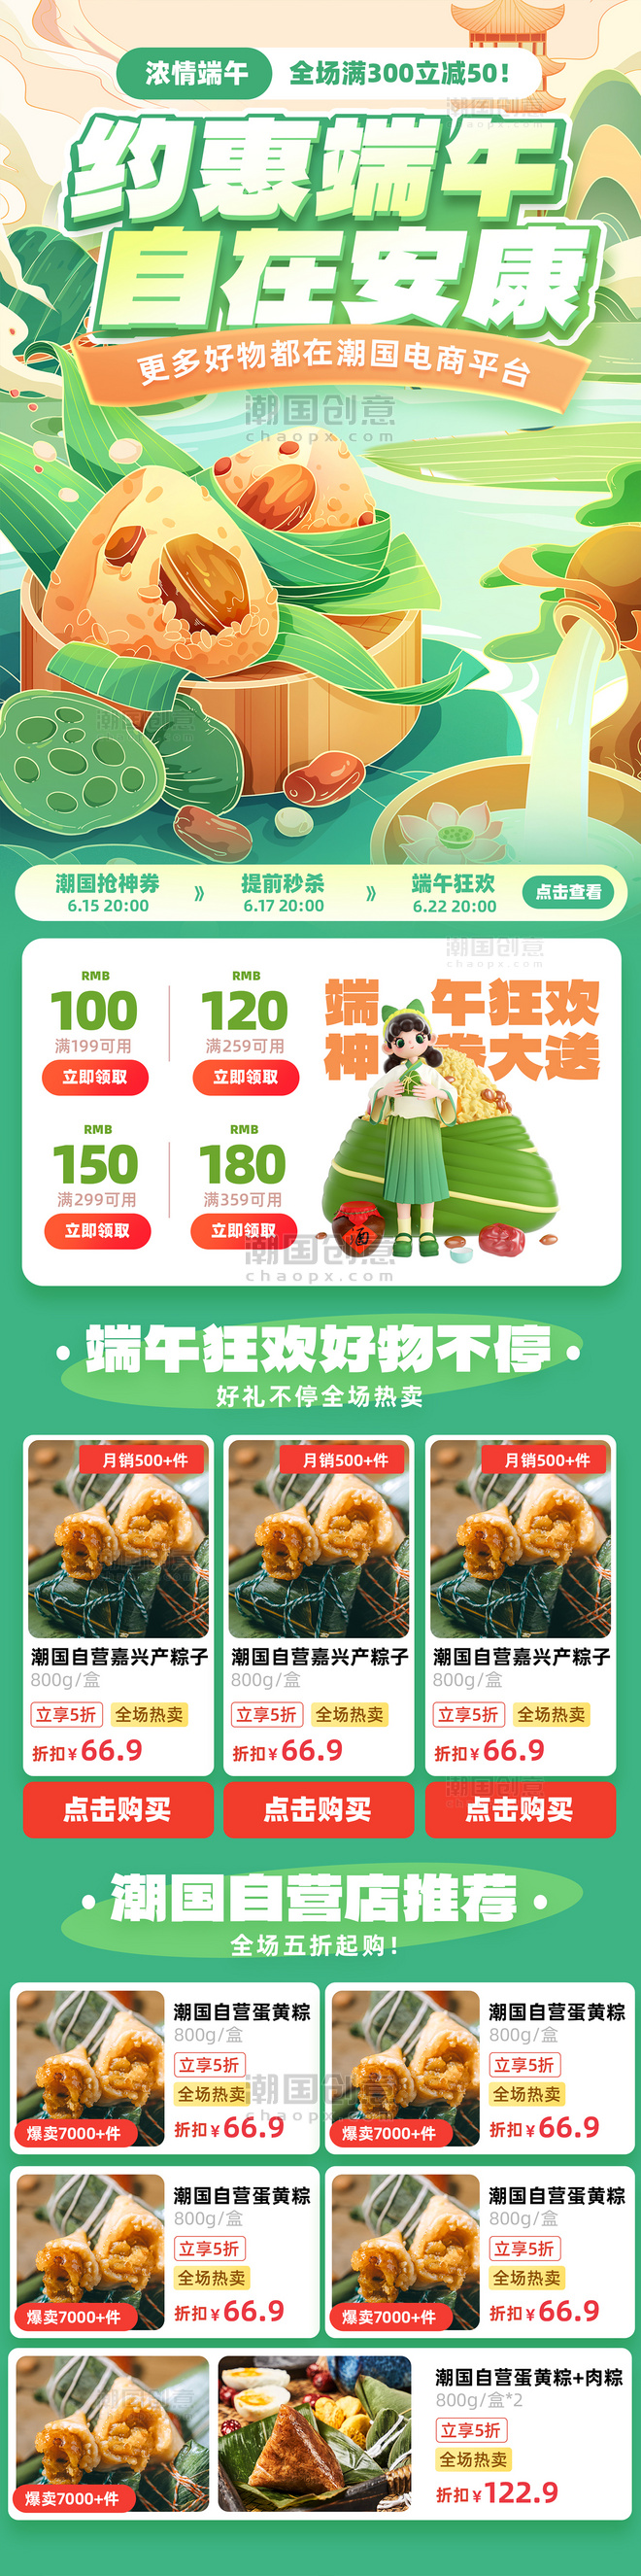 端午节绿色系电商促销购物传统节日粽子营销长图设计